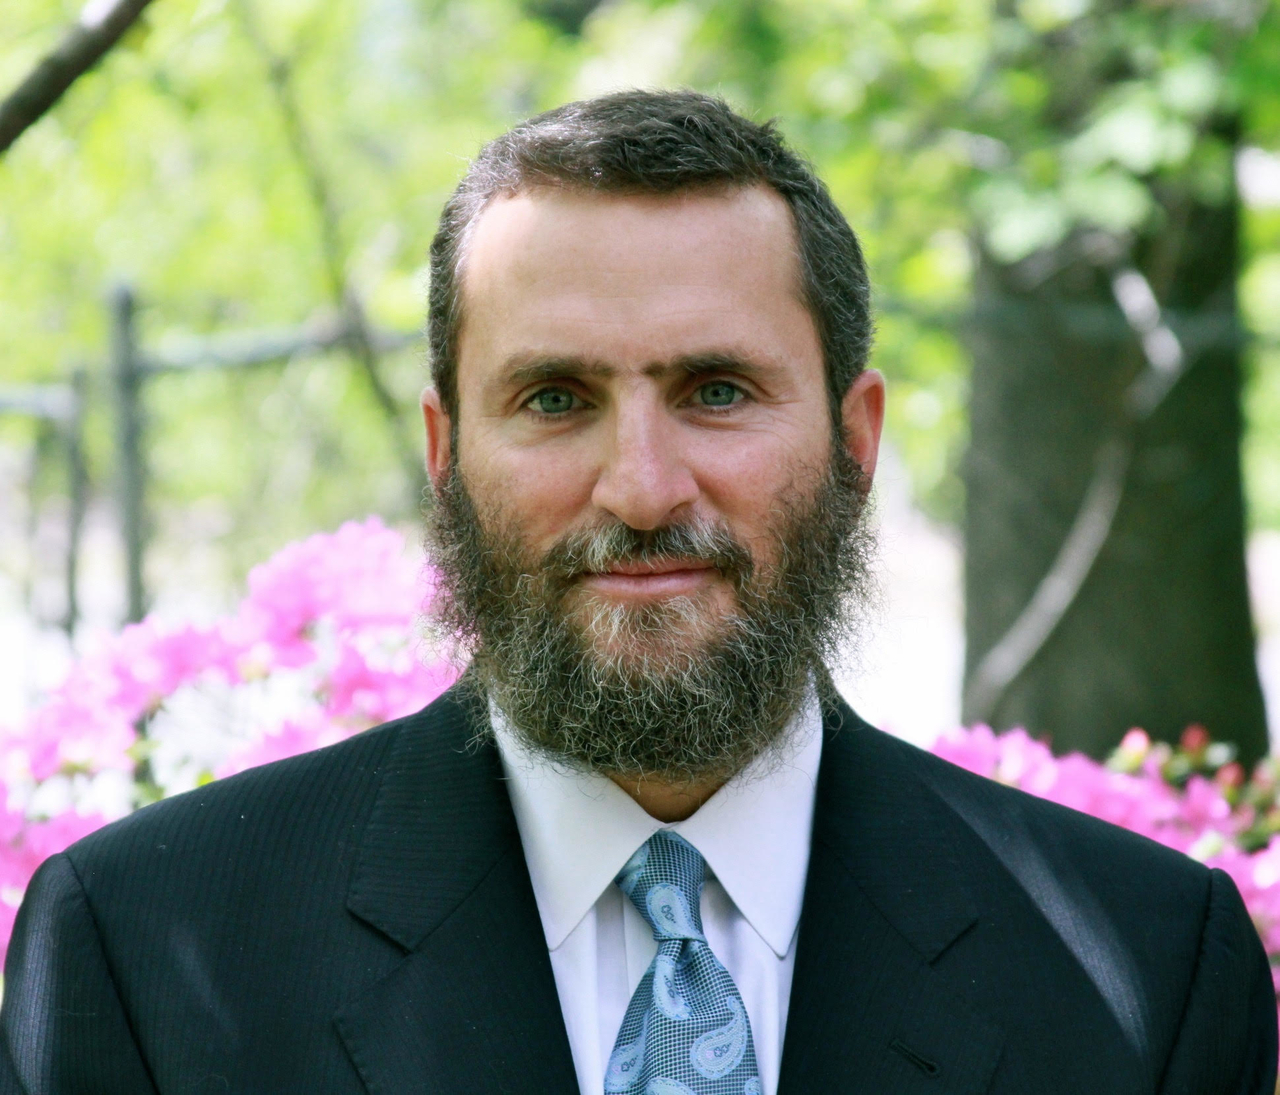 America's Rabbi